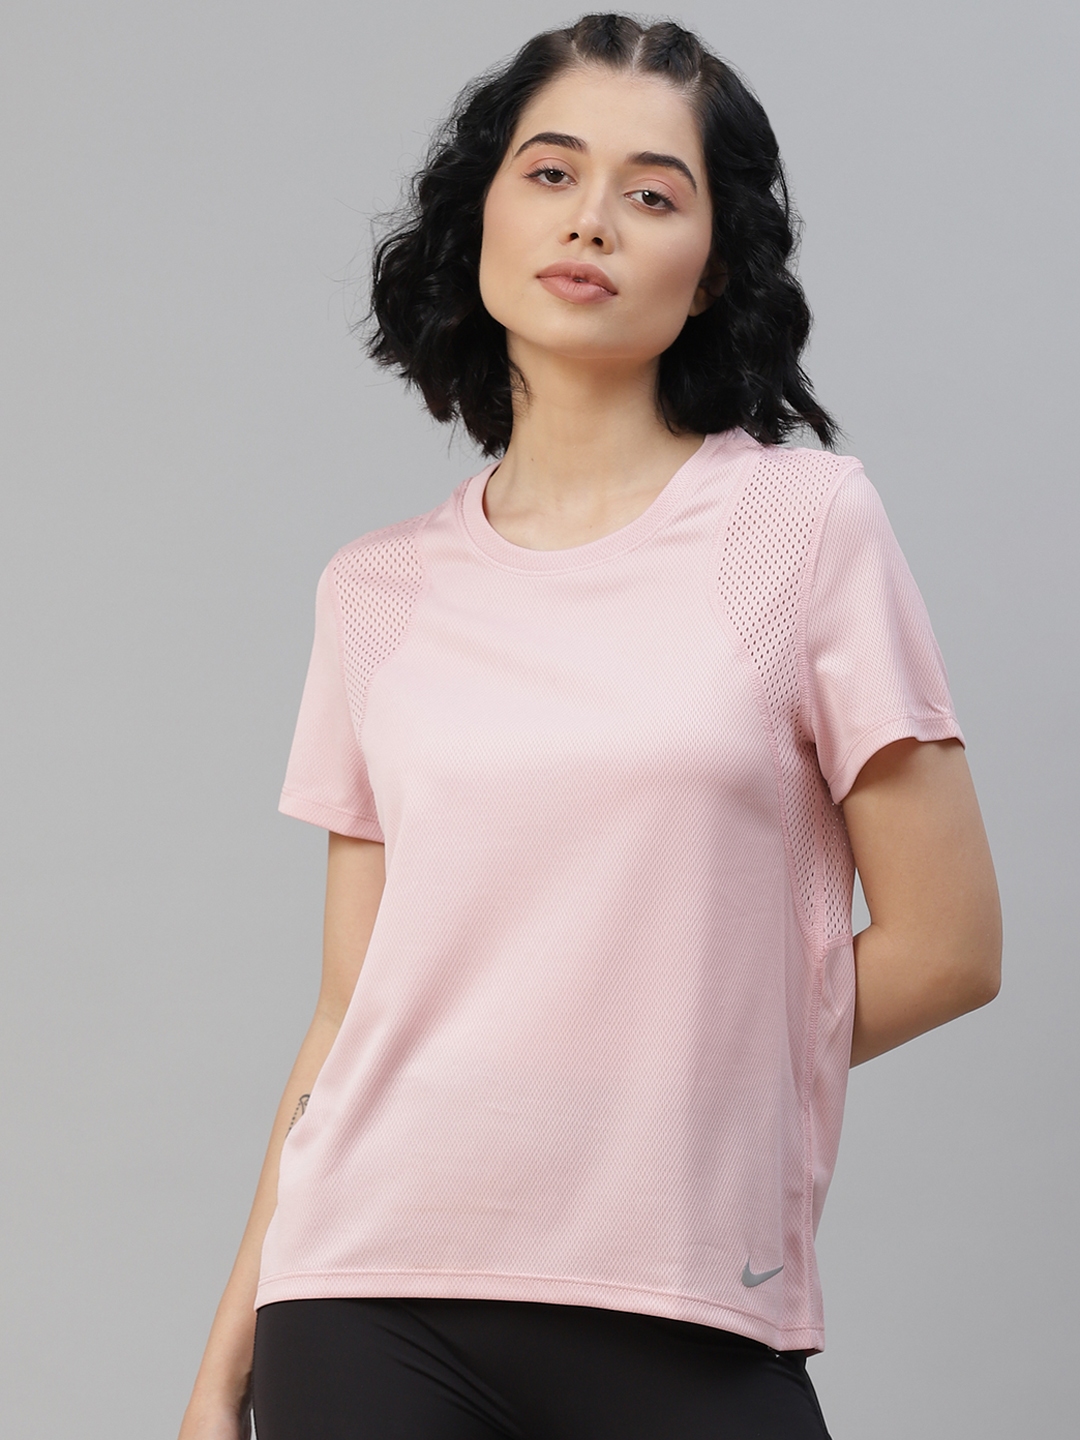 Buy Nike Women Pink Solid Run Short Sleeve T Shirt - Tshirts for Women ...